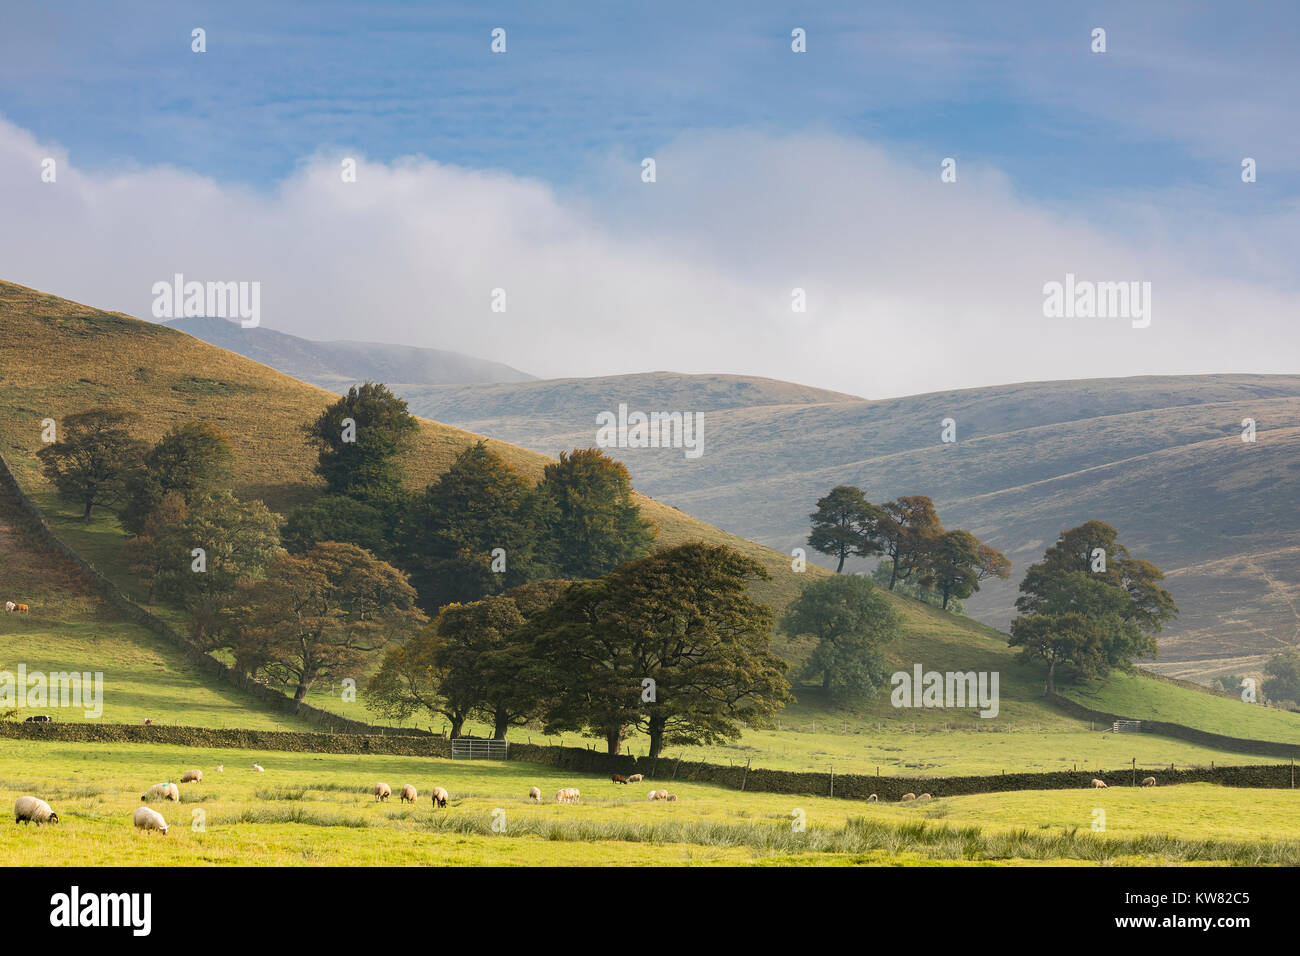 Una immagine di un gruppo di alberi in Misty Hills della Valle di Edale, Derbyshire, Inghilterra, Regno Unito. Edale è una parte del parco nazionale del Peak District. Foto Stock